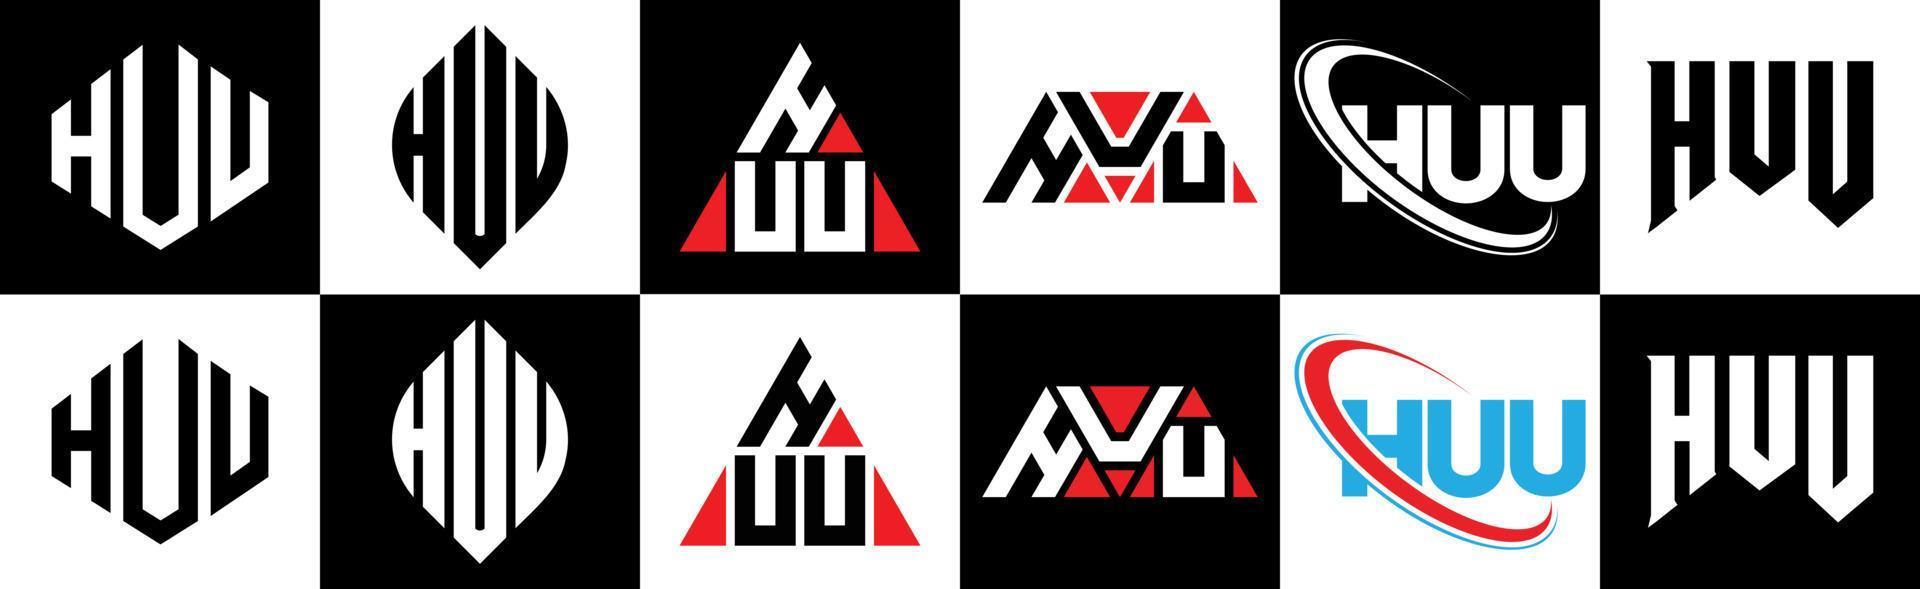 Huu-Buchstaben-Logo-Design in sechs Stilen. huu polygon, kreis, dreieck, sechseck, flacher und einfacher stil mit schwarz-weißem buchstabenlogo in einer zeichenfläche. Huu minimalistisches und klassisches Logo vektor